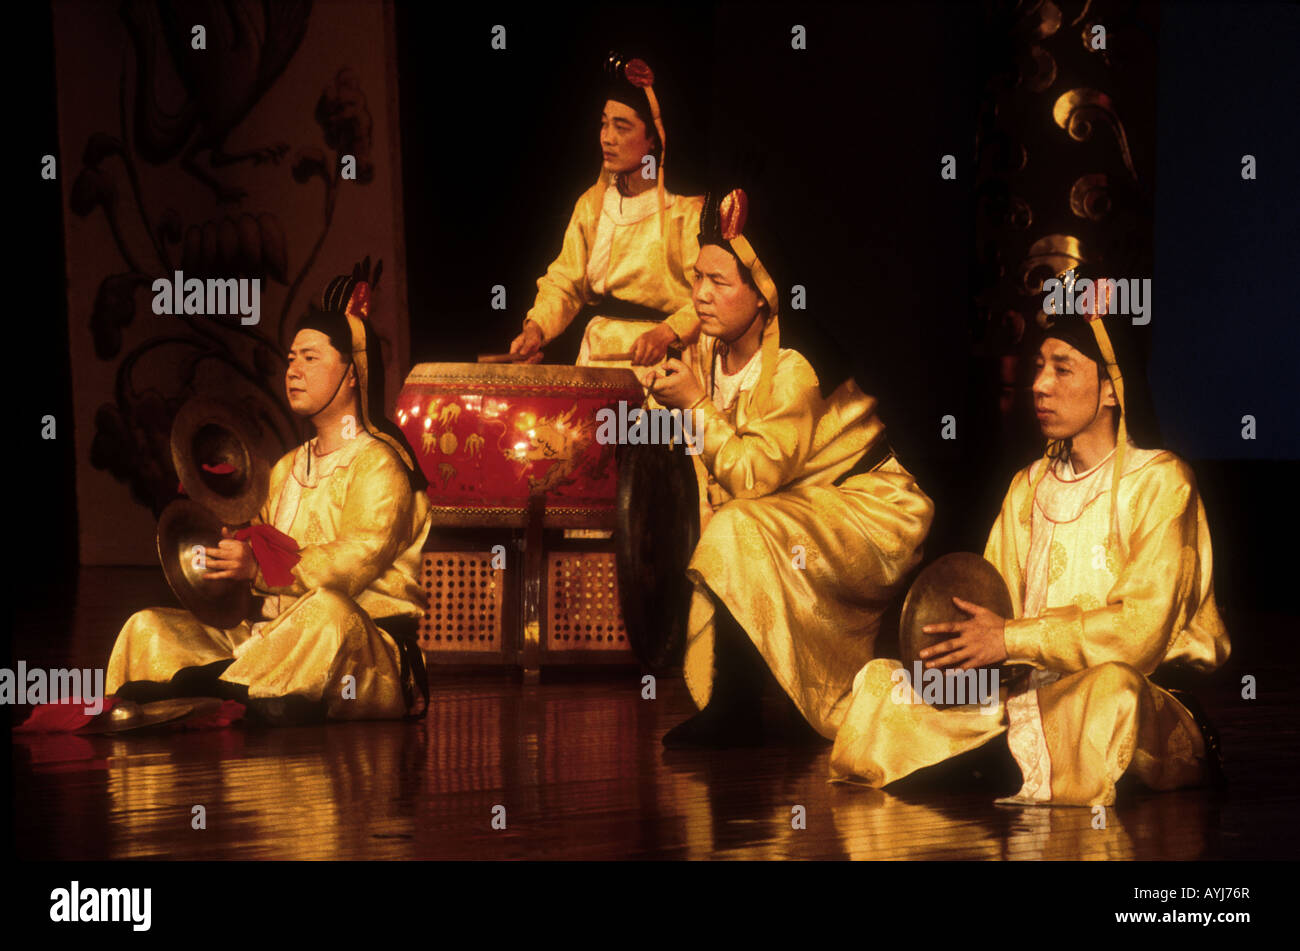 Luogo Ensemble de músicos que tocan instrumentos tradicionales de la dinastía Tang en el rendimiento de la ruta de la Seda en Xi'an Foto de stock